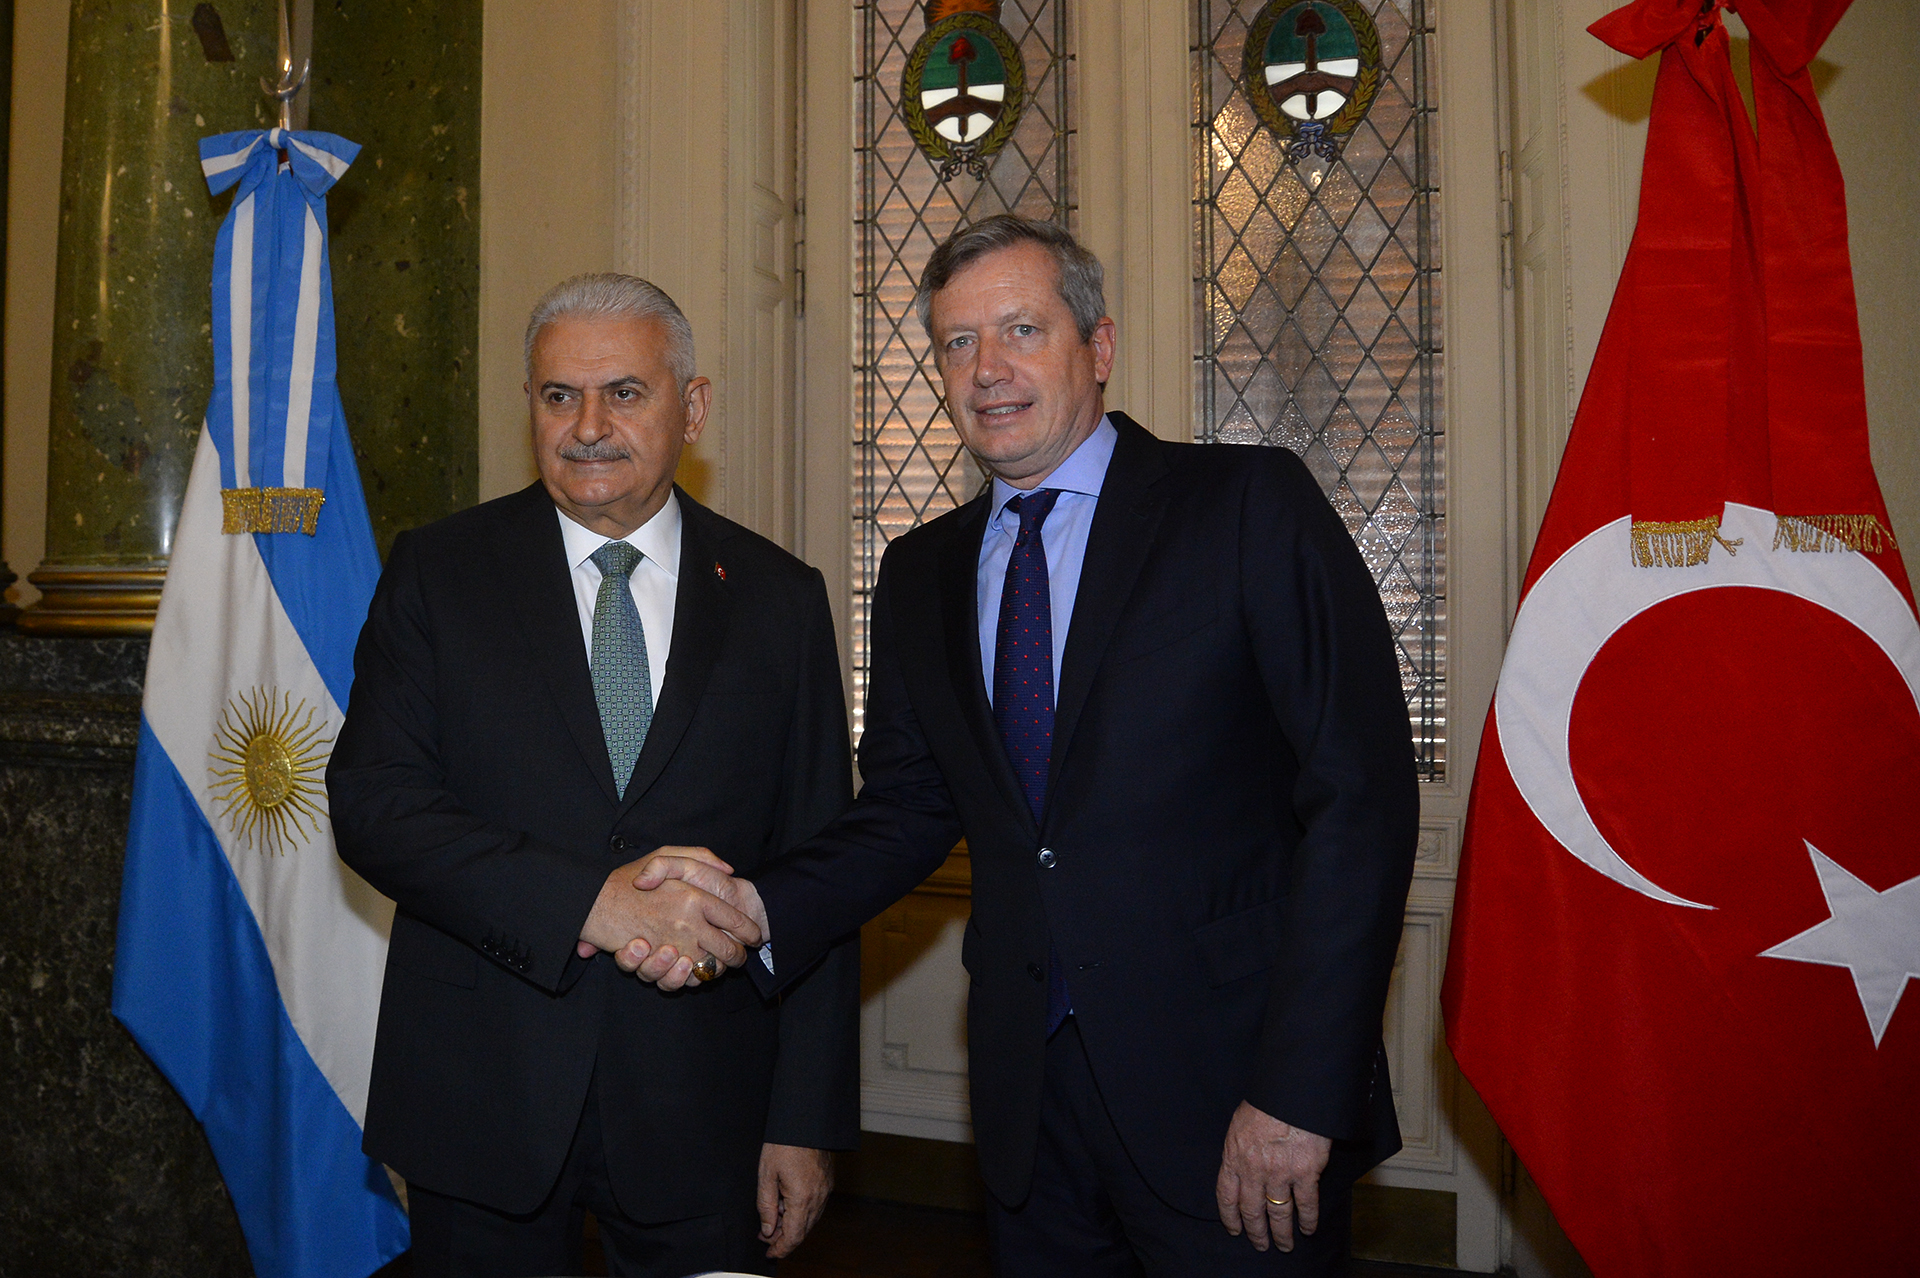 Francia, Japón y Turquía fortalecen vínculos con Argentina a través de la diplomacia parlamentaria